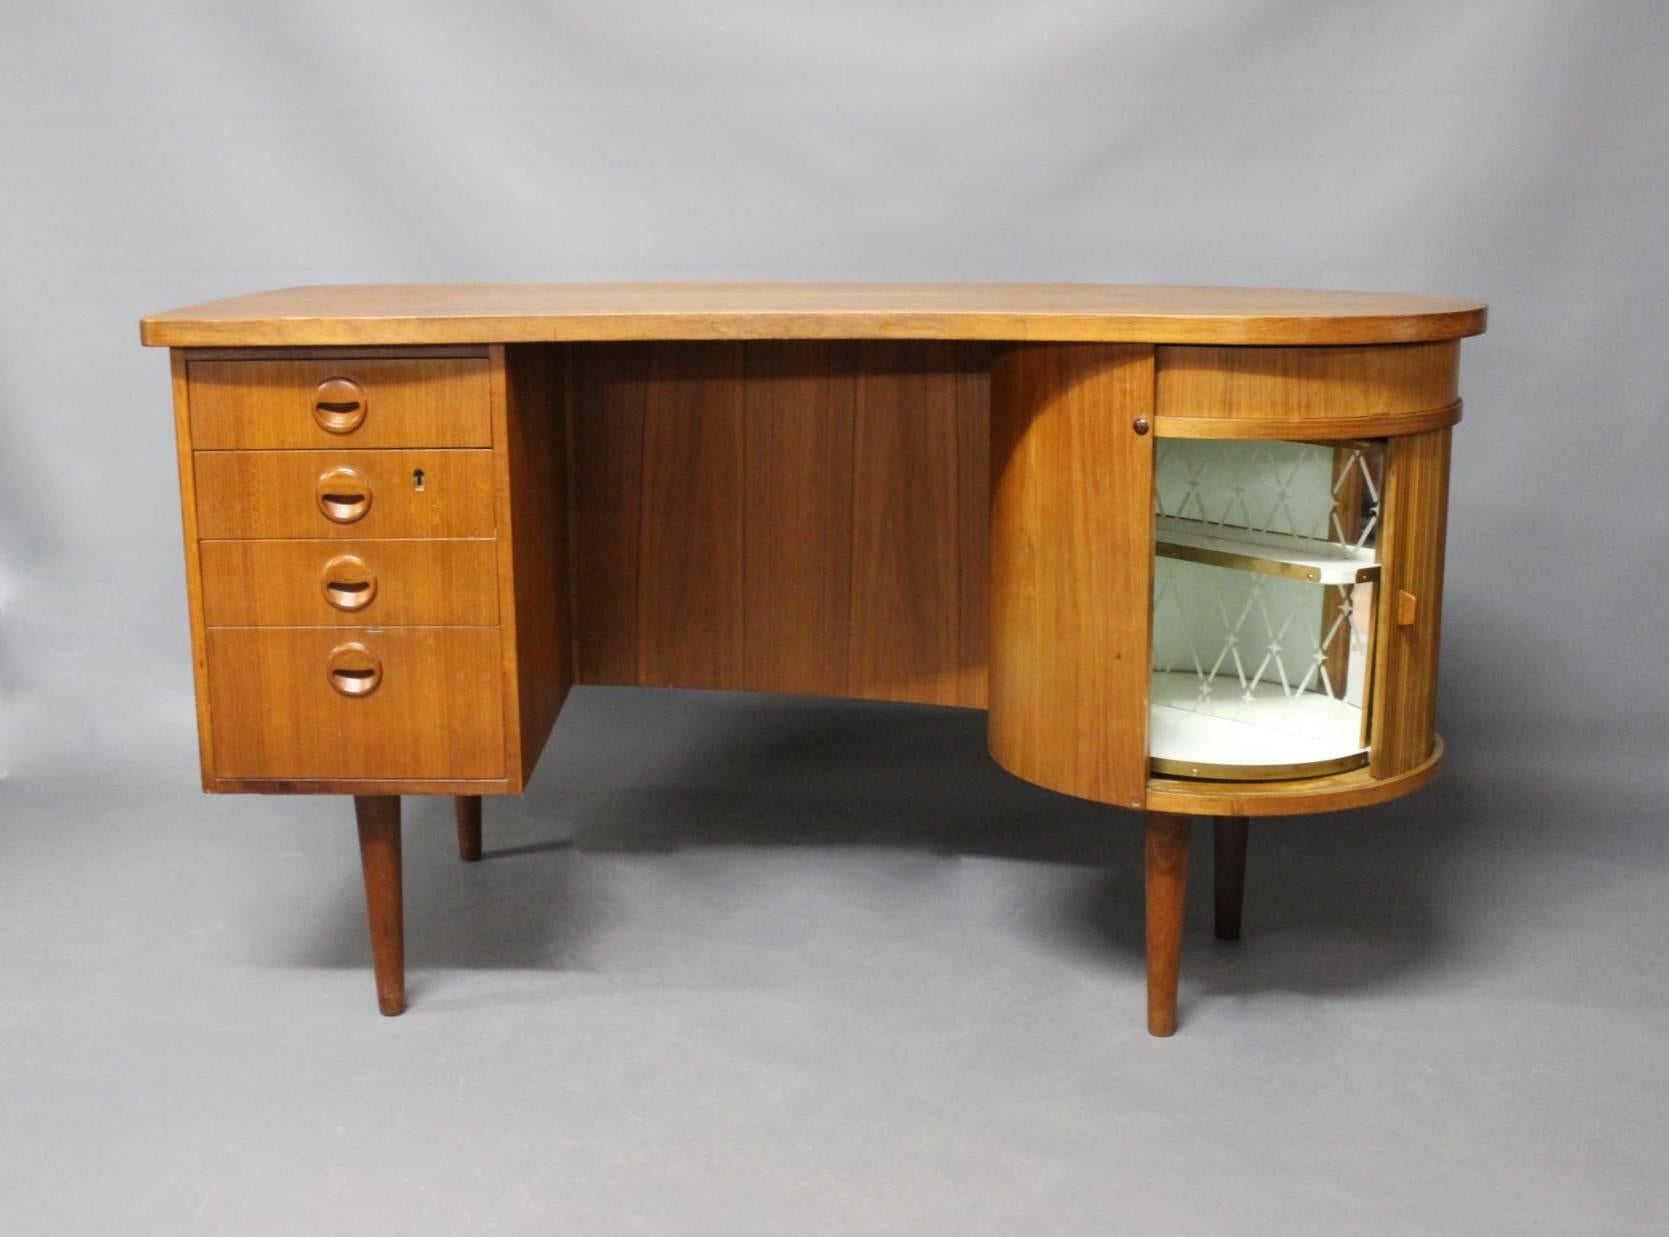 Desk in teak designed by Kai Kristiansen, Danish design from the 1960s.